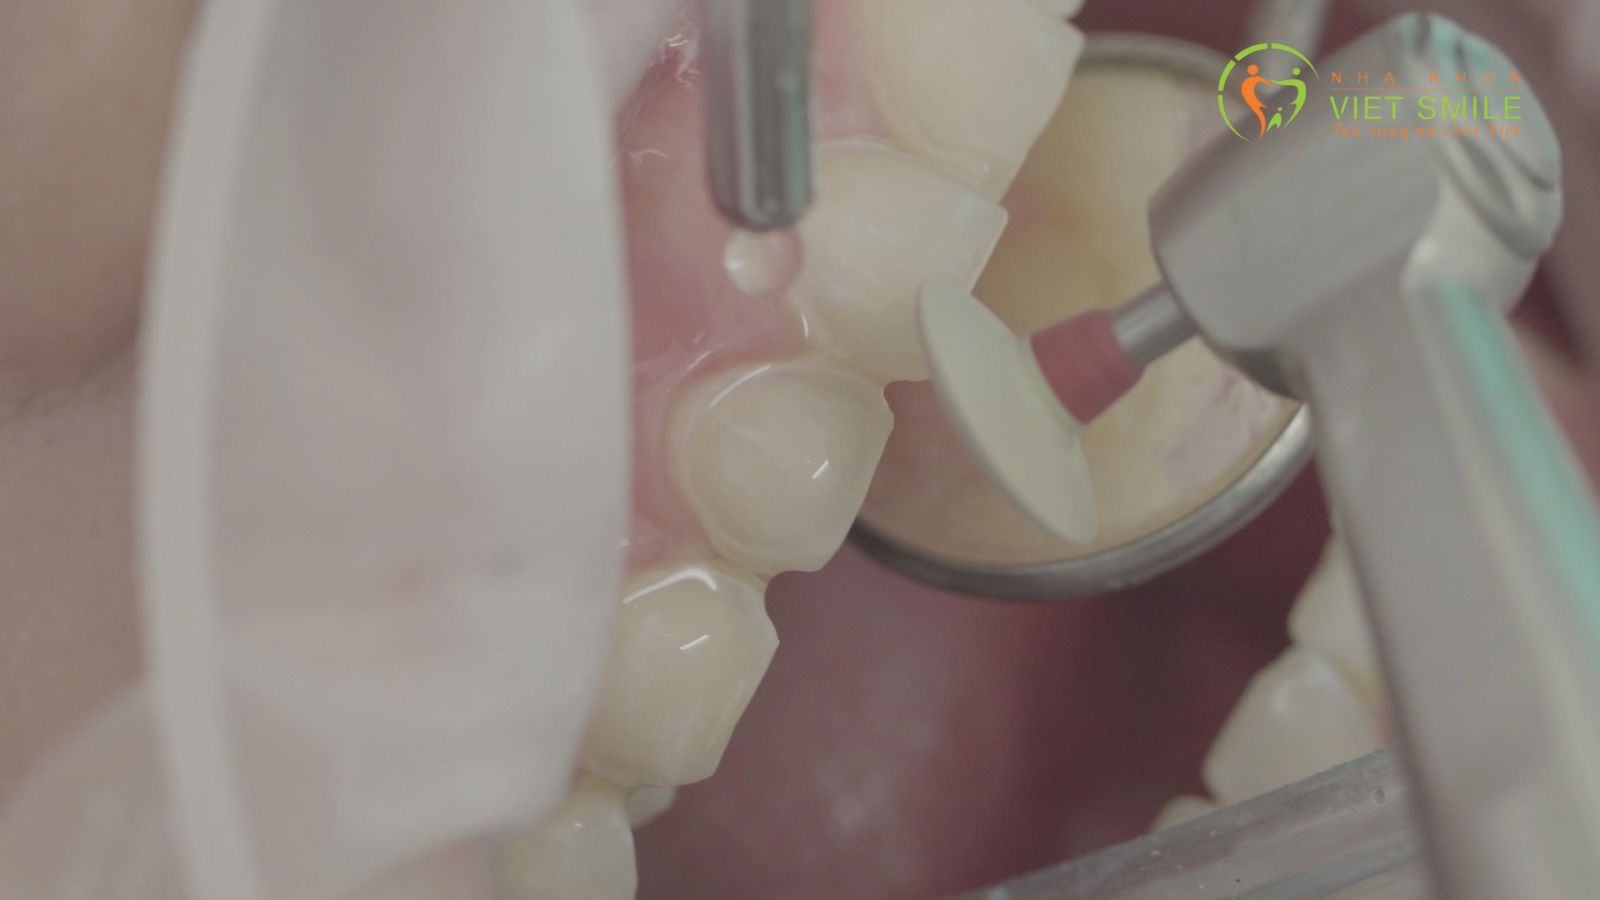 Bác sĩ xử lý làm mịn bề mặt răng và lấy dấu gửi labo để làm miếng dán veneer theo thiết kế form răng dành riêng cho bạn